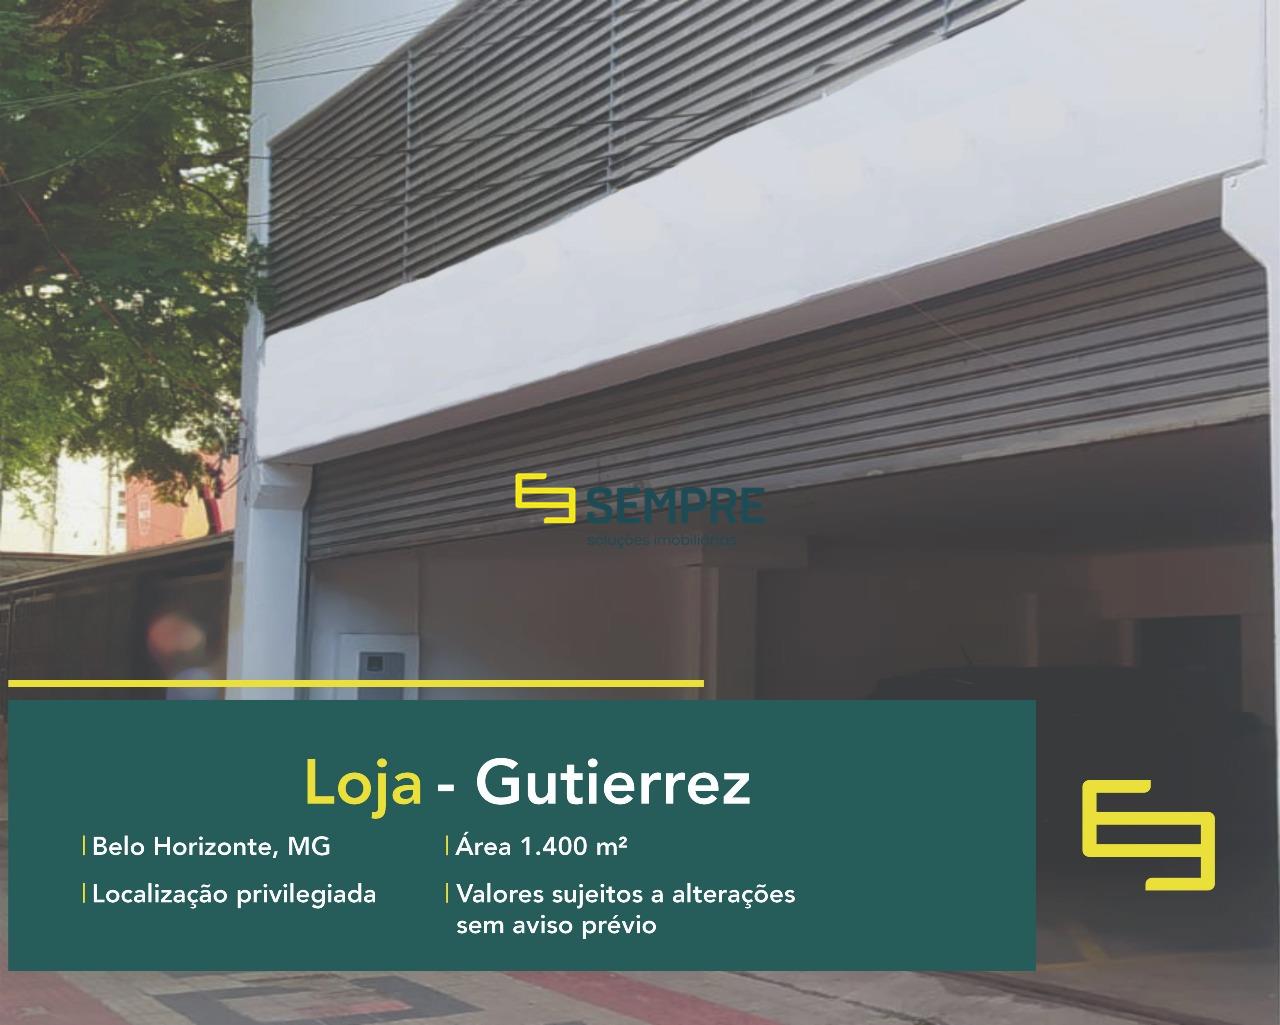 Loja para alugar no bairro Gutierrez em Belo Horizonte, excelente localização. O estabelecimento comercial conta com área de 1.400 m².